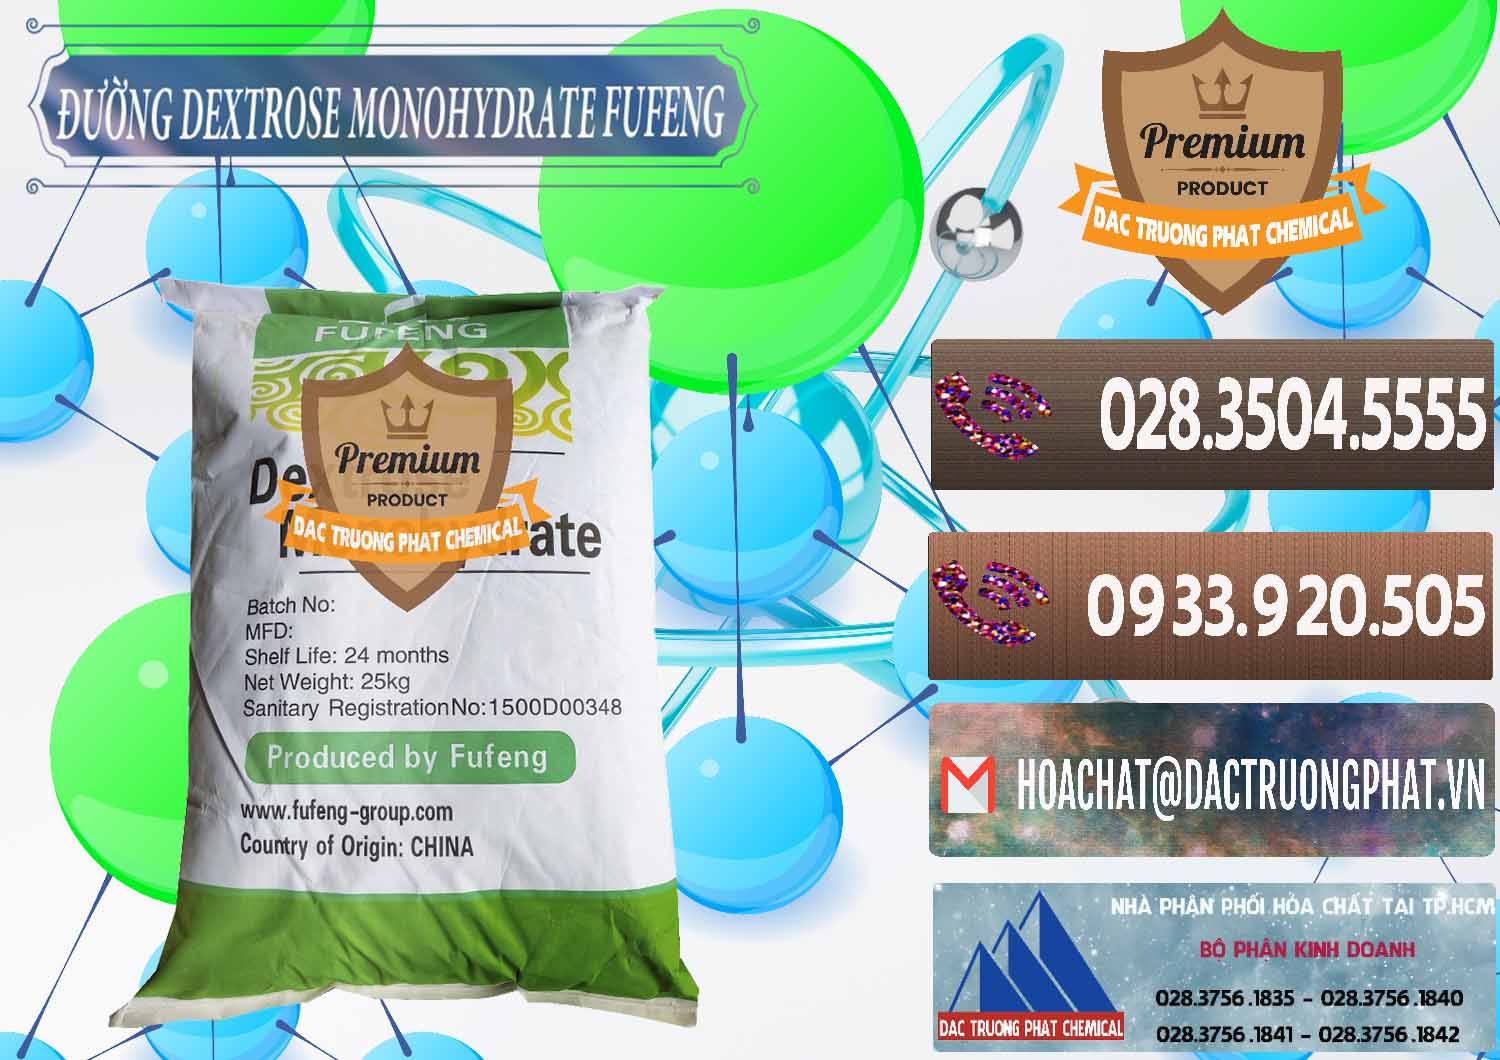 Cty chuyên cung ứng & bán Đường Dextrose Monohydrate Food Grade Fufeng Trung Quốc China - 0223 - Cty chuyên phân phối và bán hóa chất tại TP.HCM - hoachatviet.net